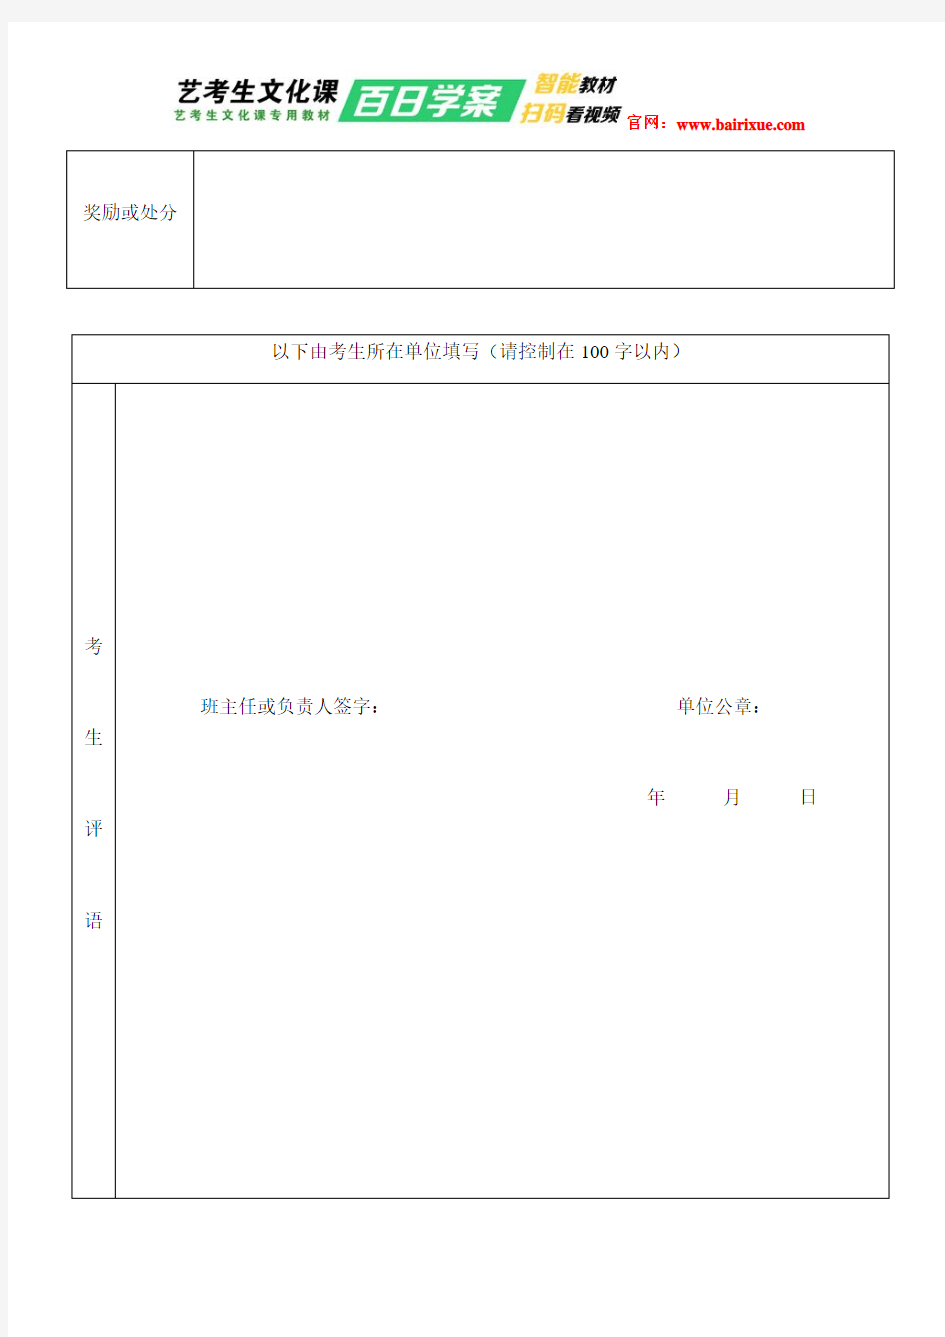 2019湖北省高考报名登记表及填写说明 免费下载